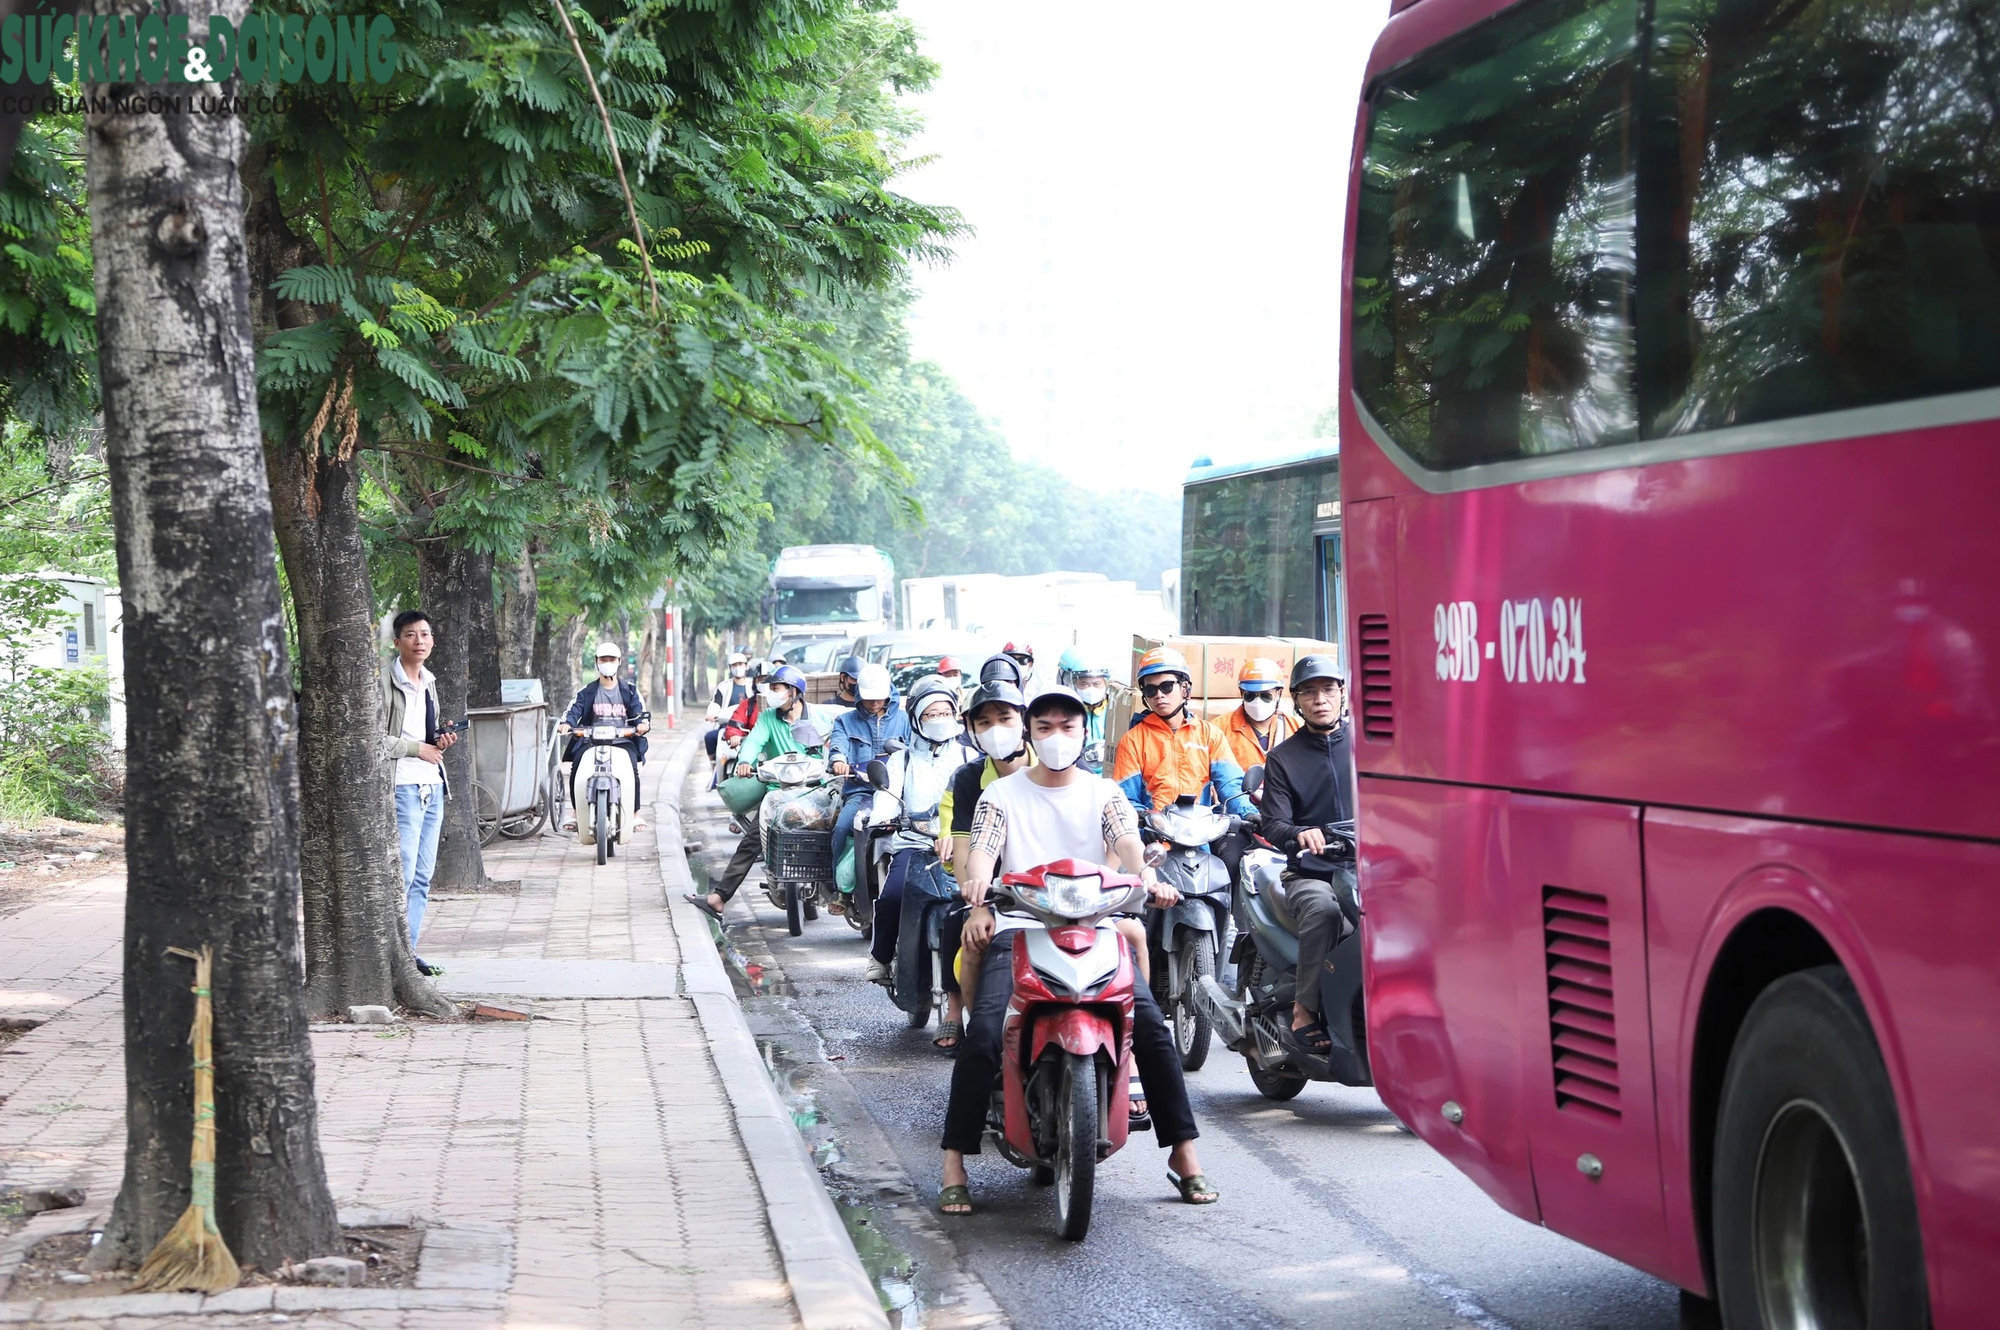 'Bến cóc' công khai trên Đại lộ Thăng Long, nhà xe chuẩn bị cả chỗ ngồi cho khách- Ảnh 19.